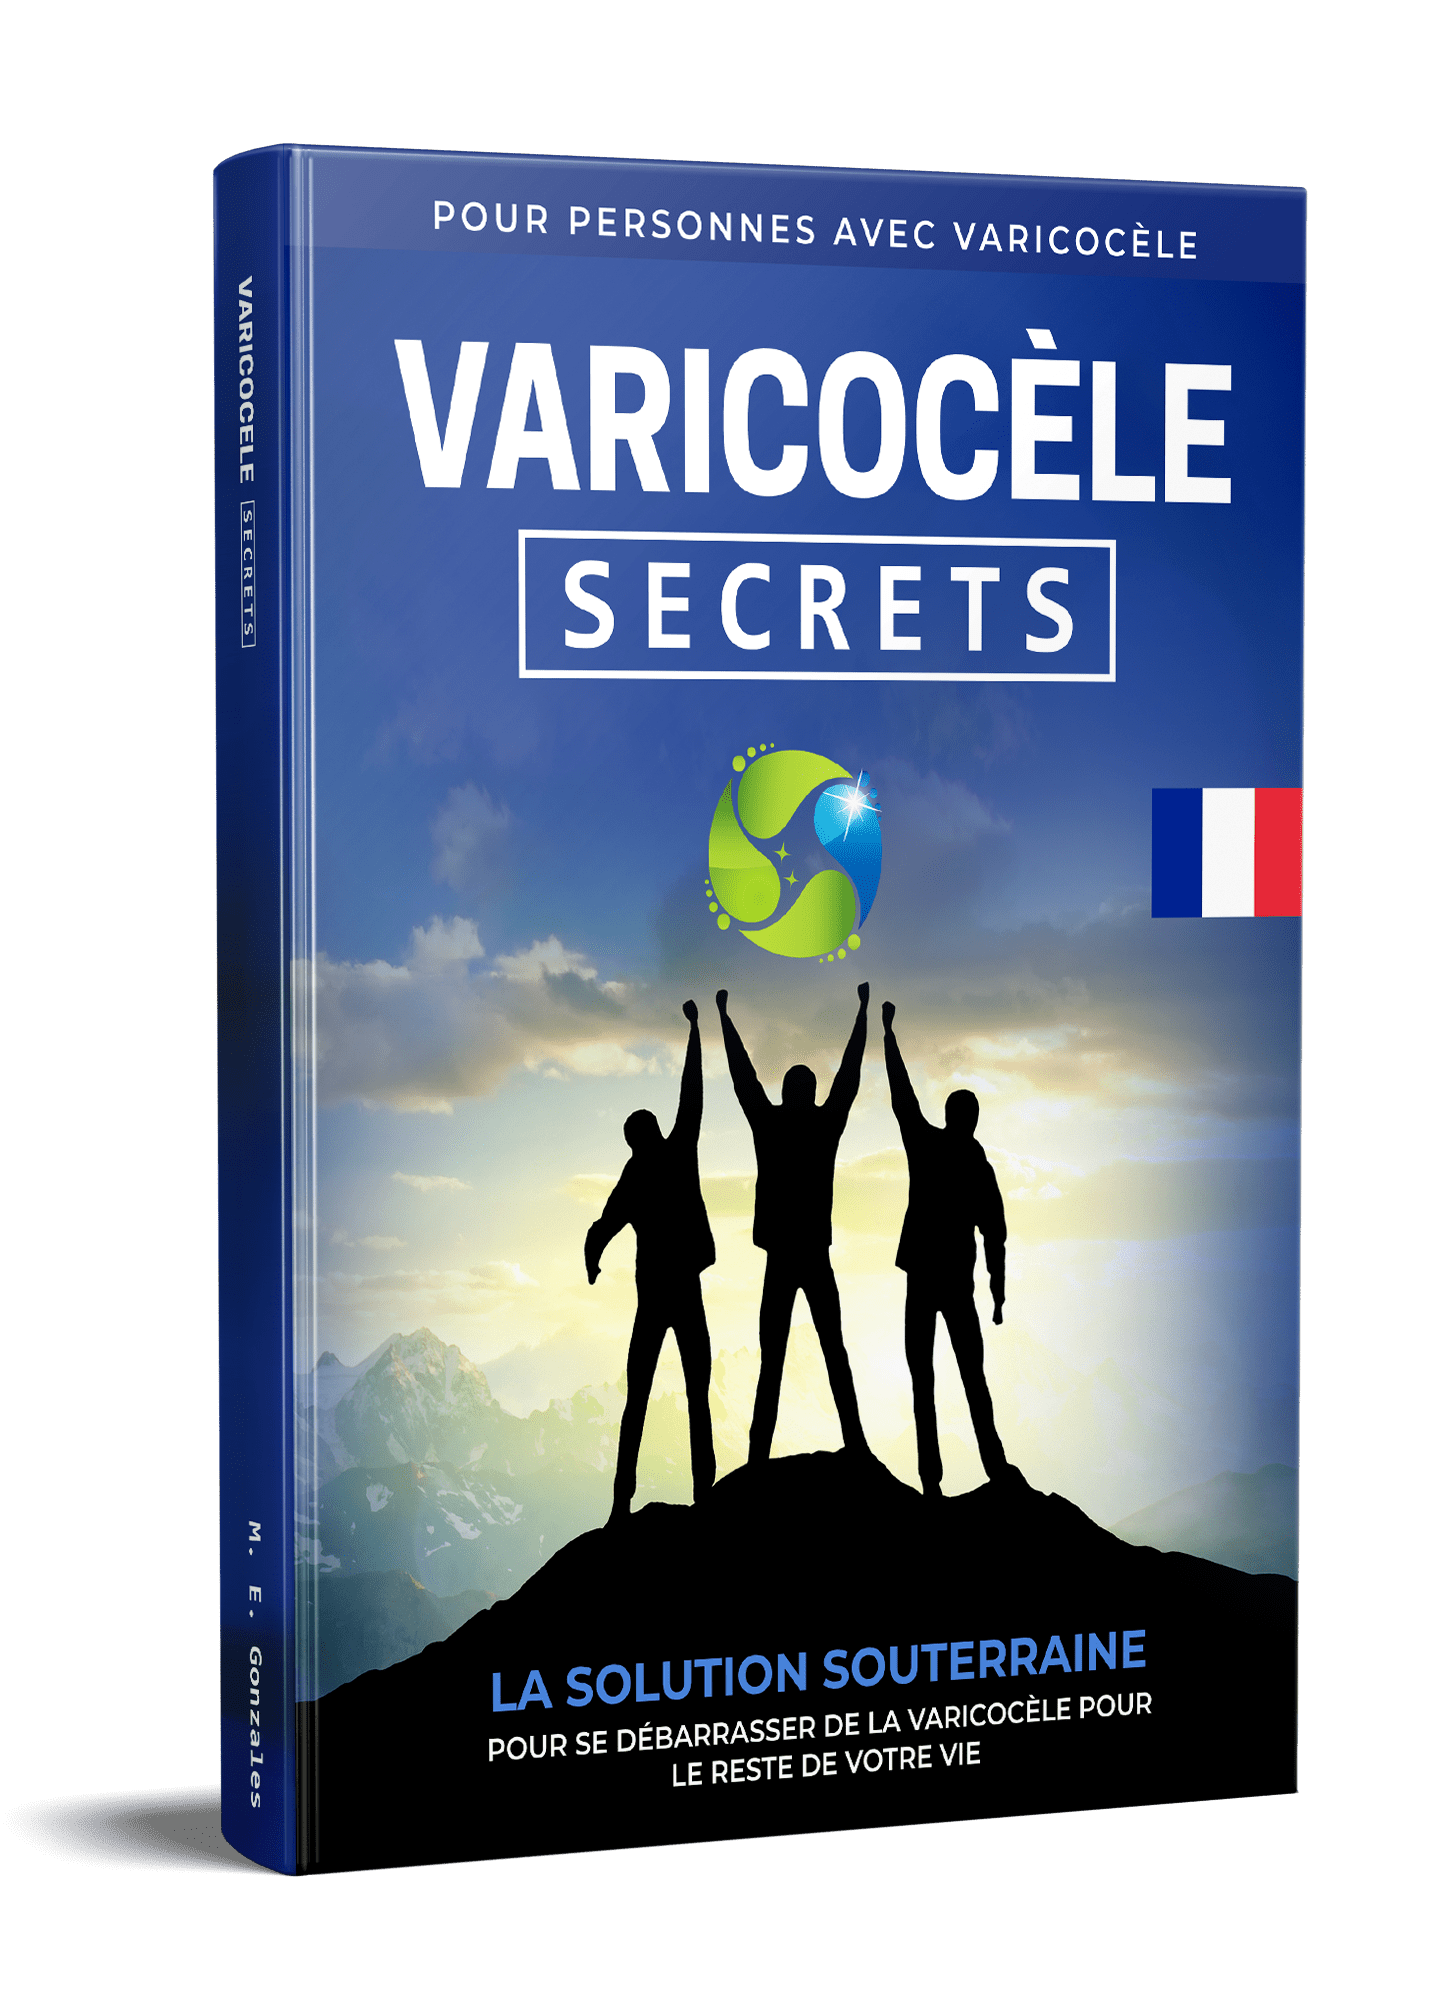 Varicocele Segreti E-Livre francese